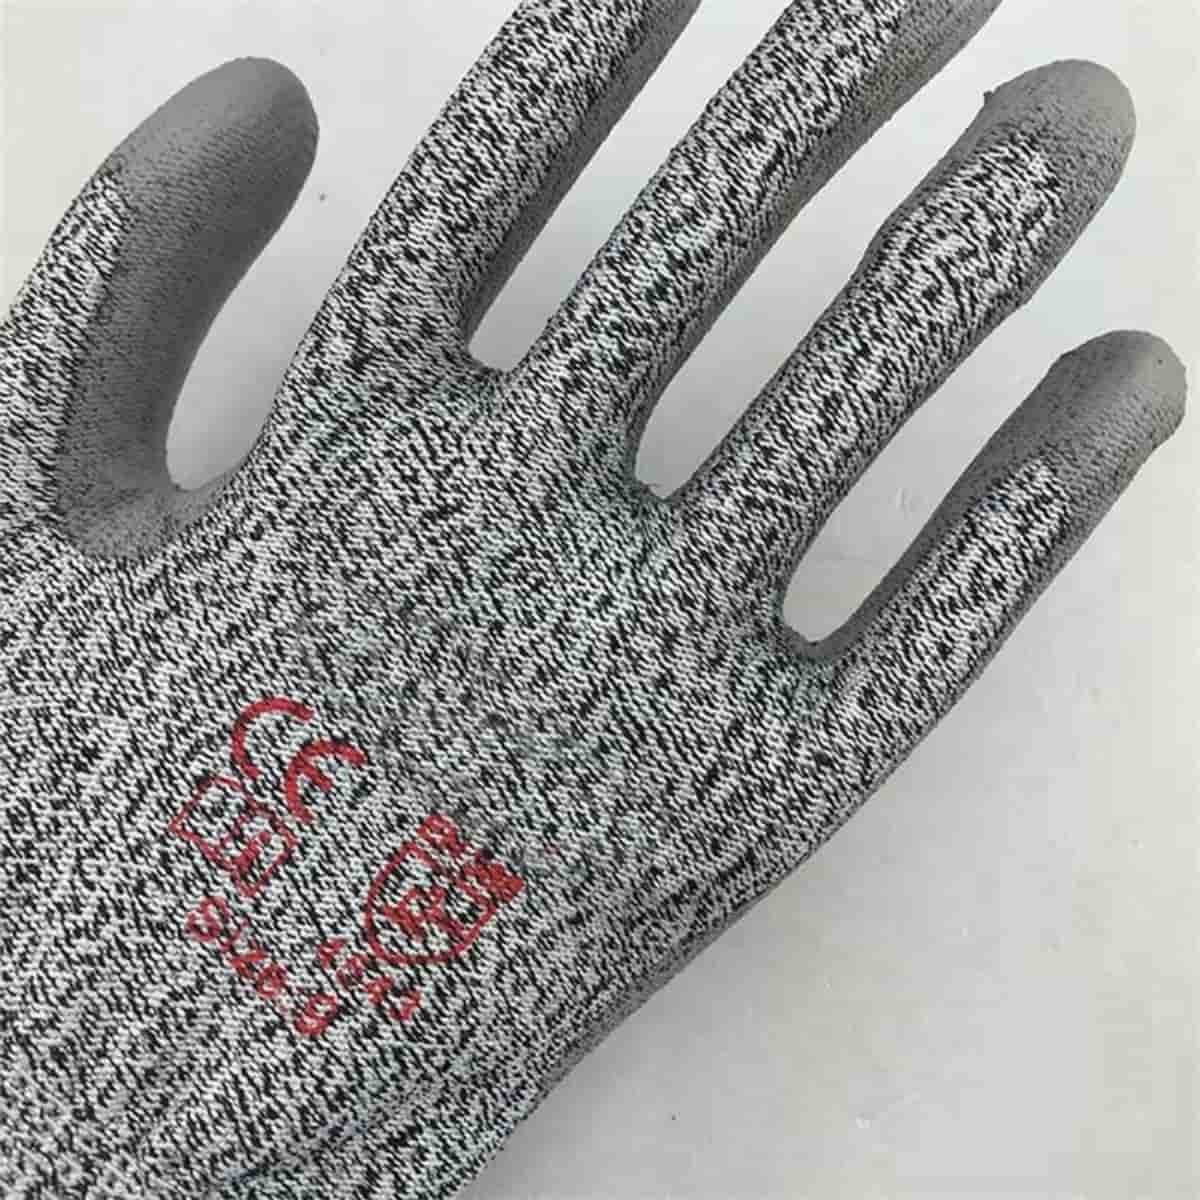 13 Gauge HPPE կտրվածքի դիմացկուն մոխրագույն PU ծածկույթով ձեռնոցներ աշխատանքային պաշտպանության համար